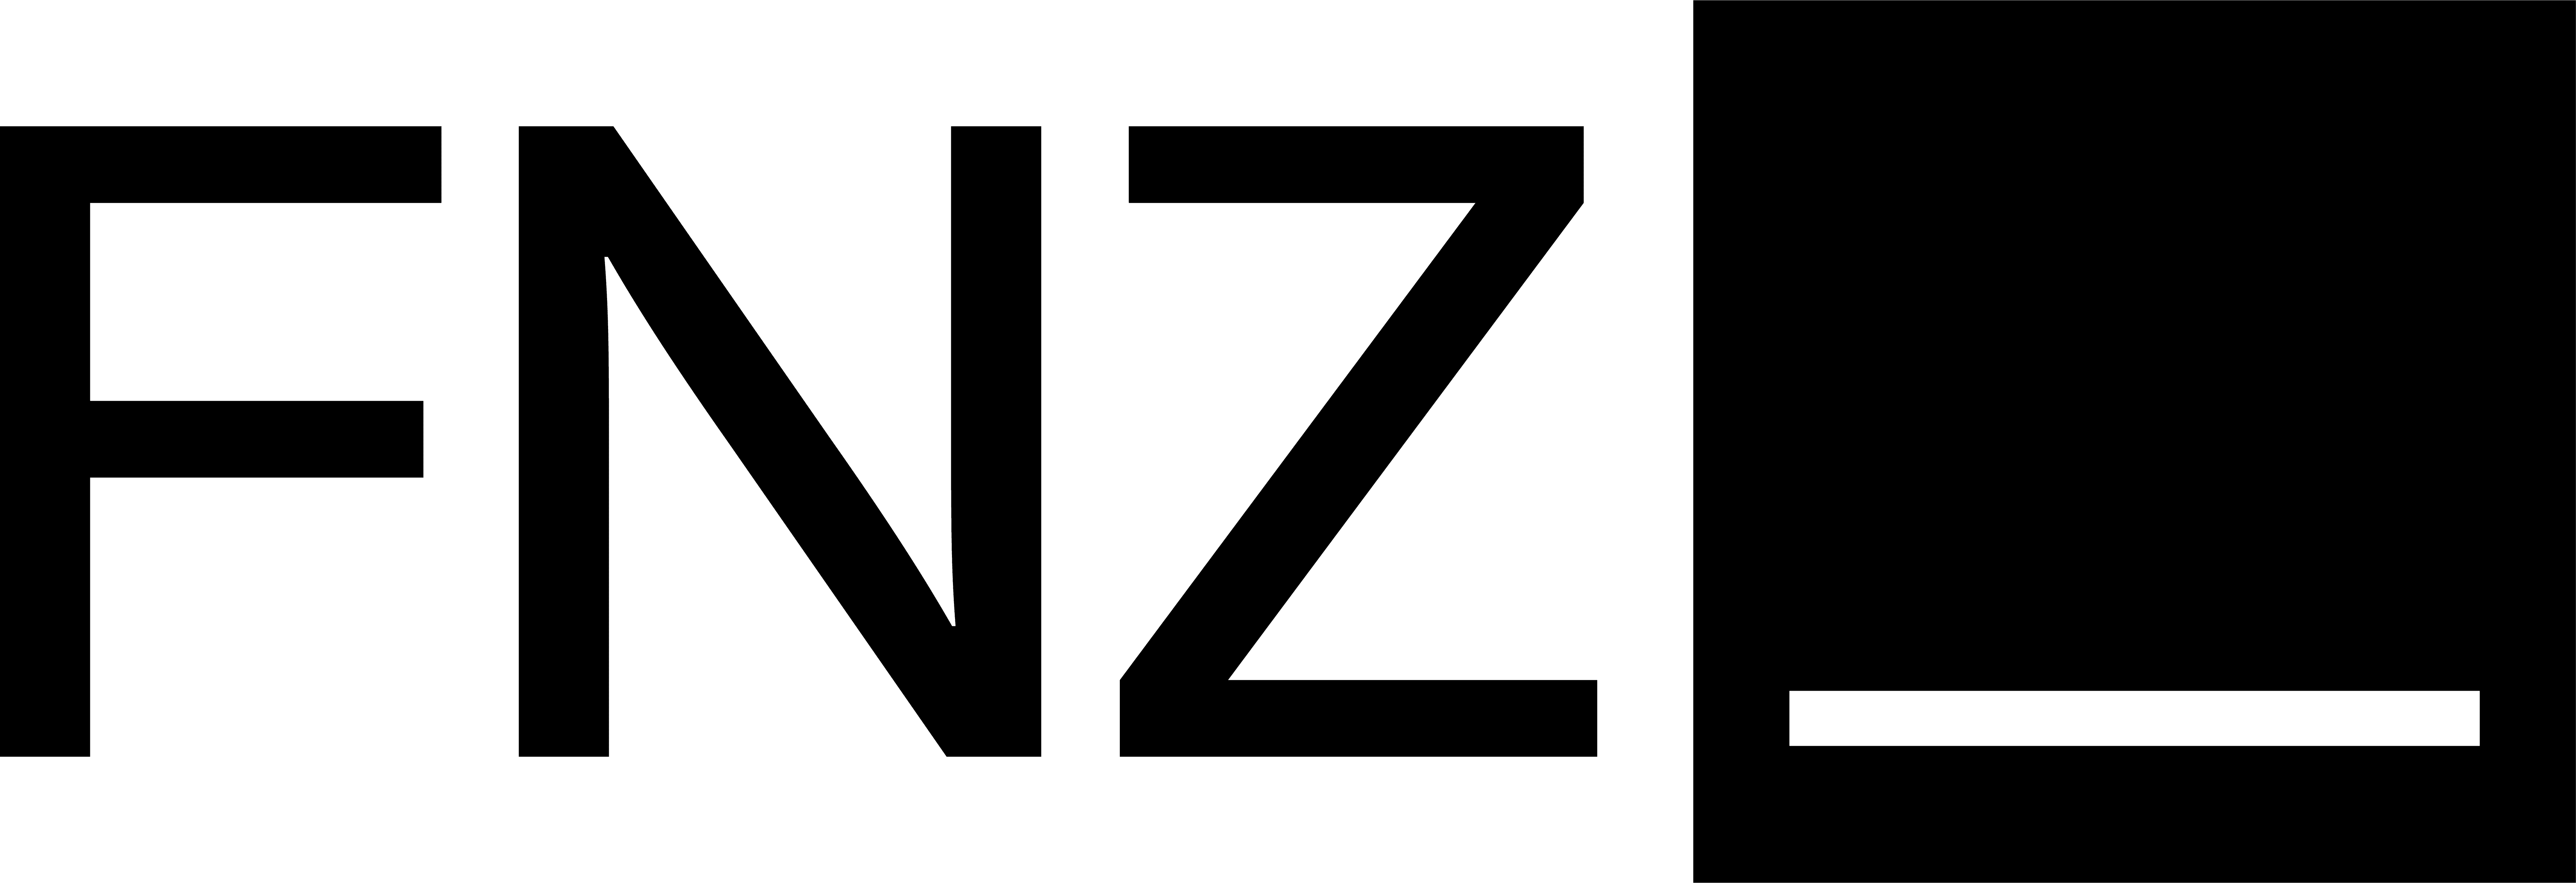 Anschrift FNZ Bank